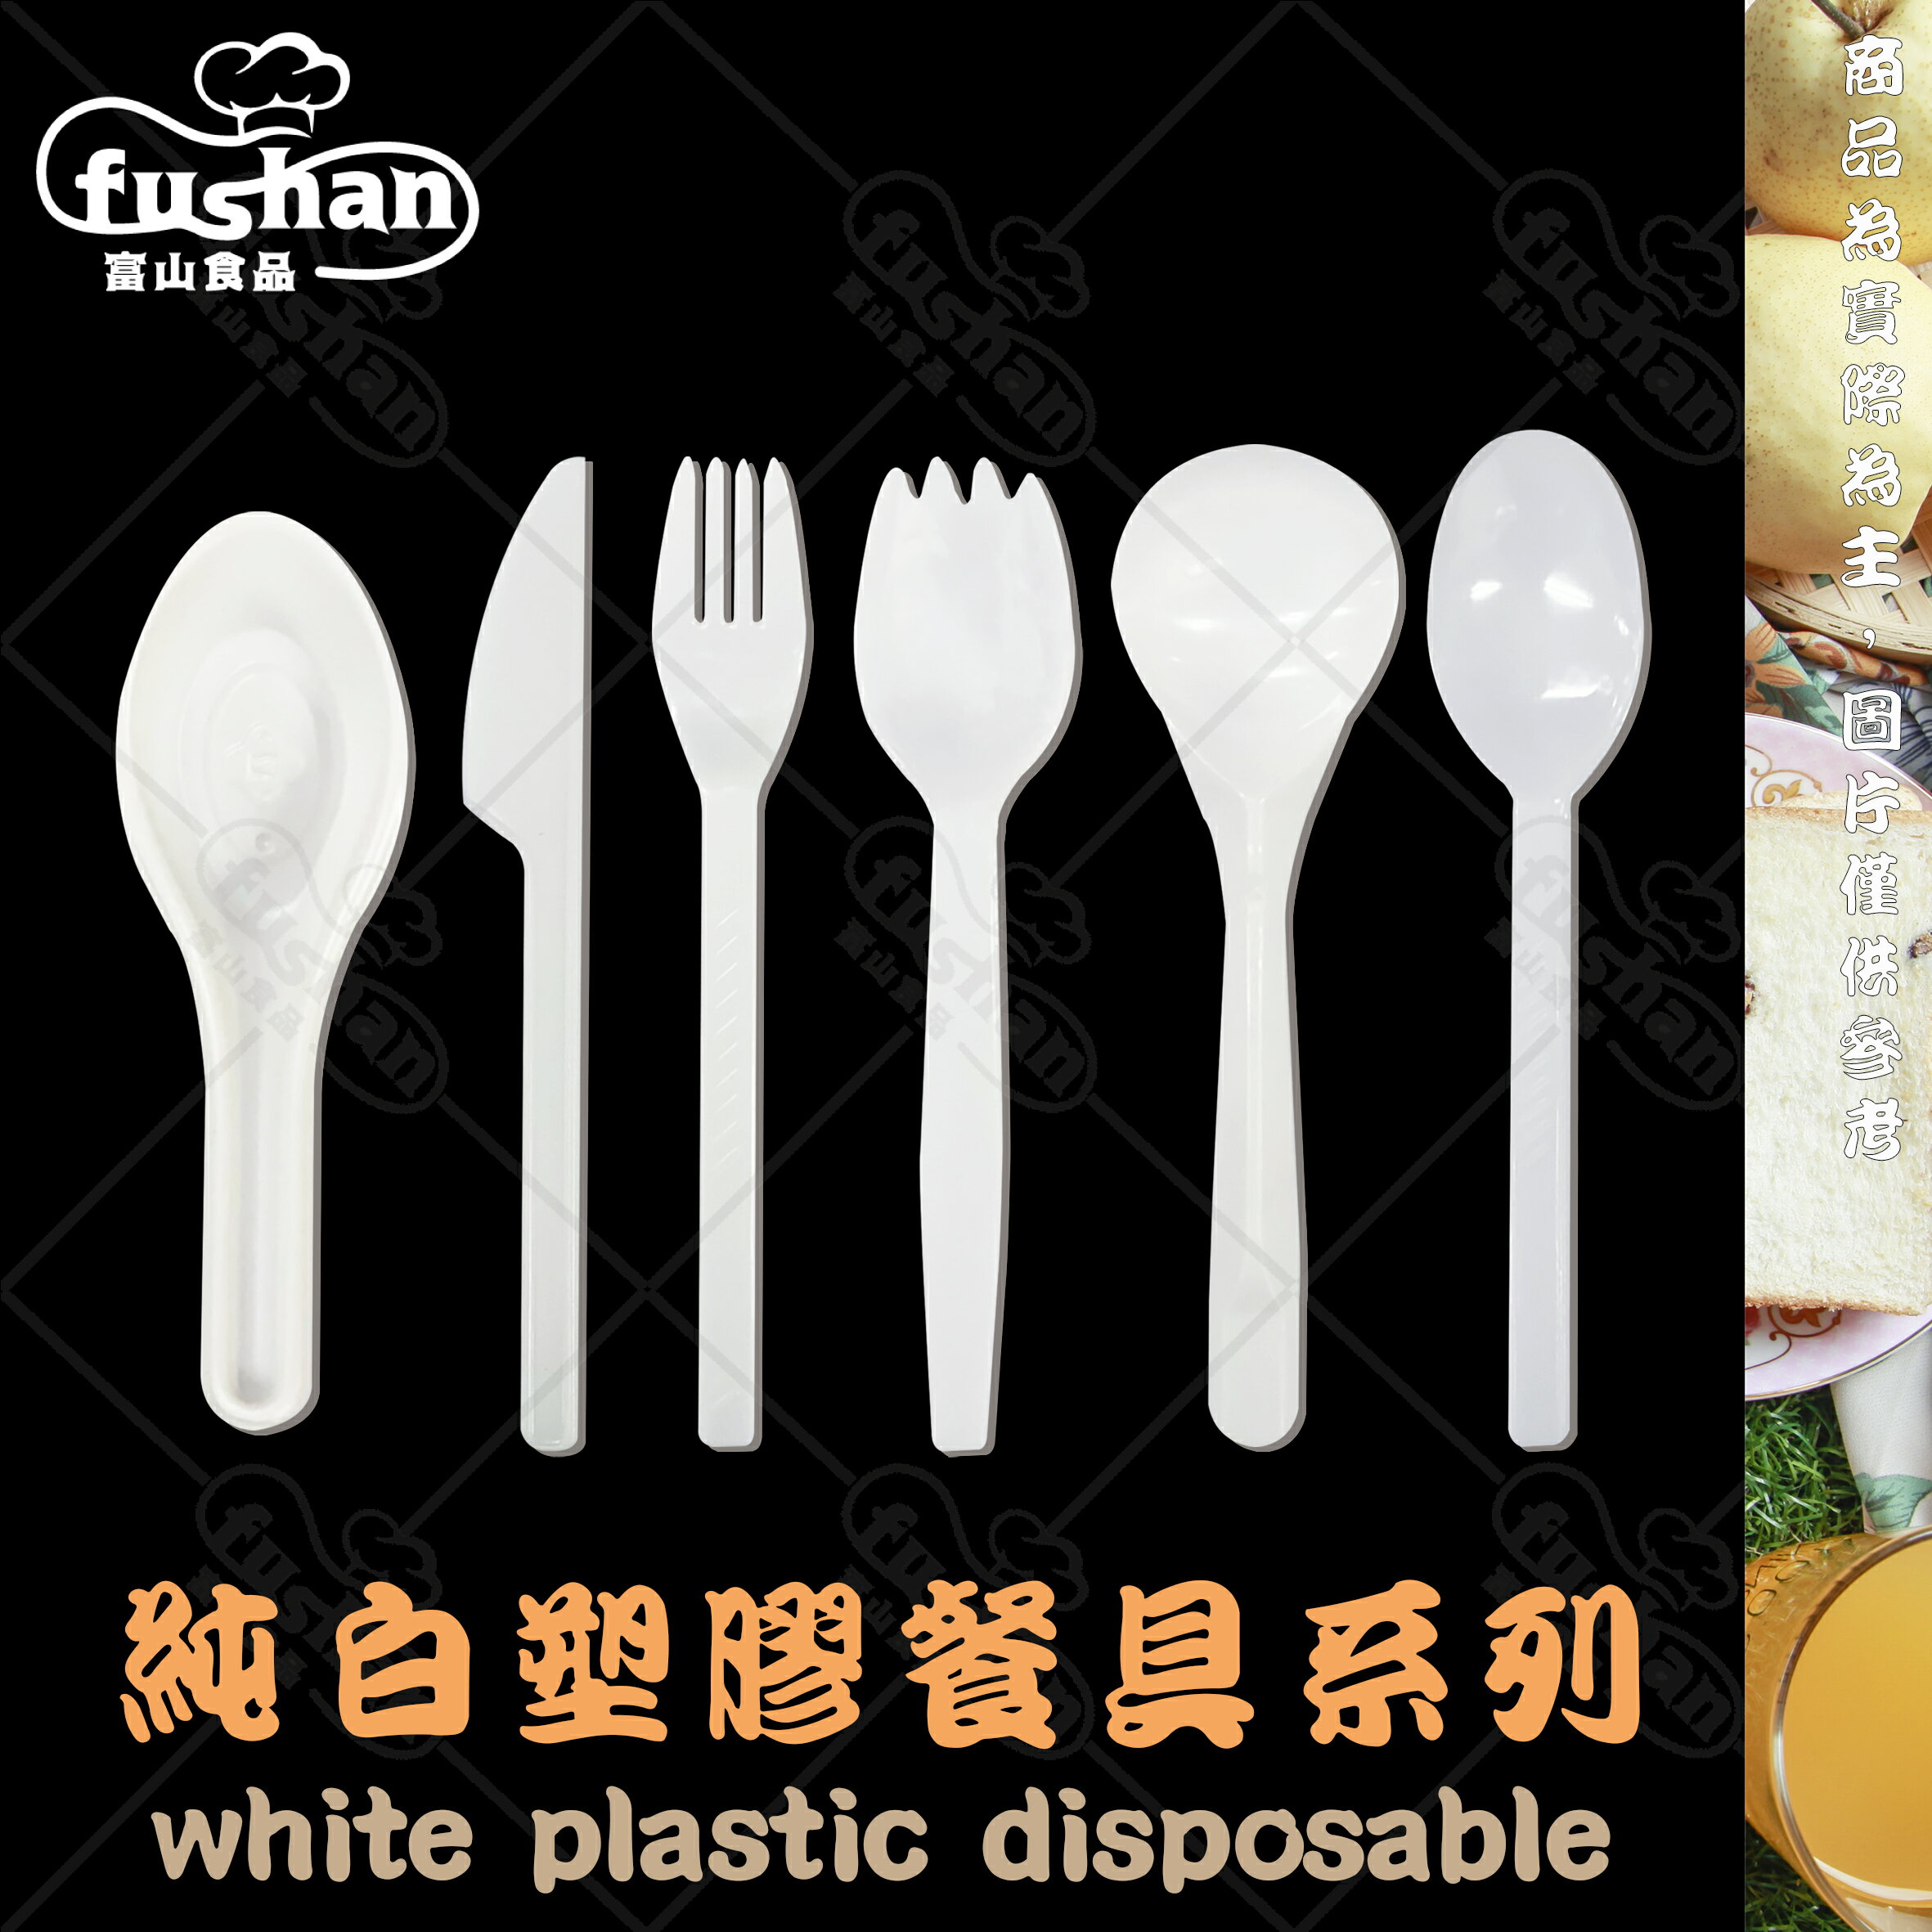 【富山食品】純白 塑膠餐具系列 可冷凍 台灣製造 吸管 叉子 刀子 湯匙 免洗餐具 環保餐具